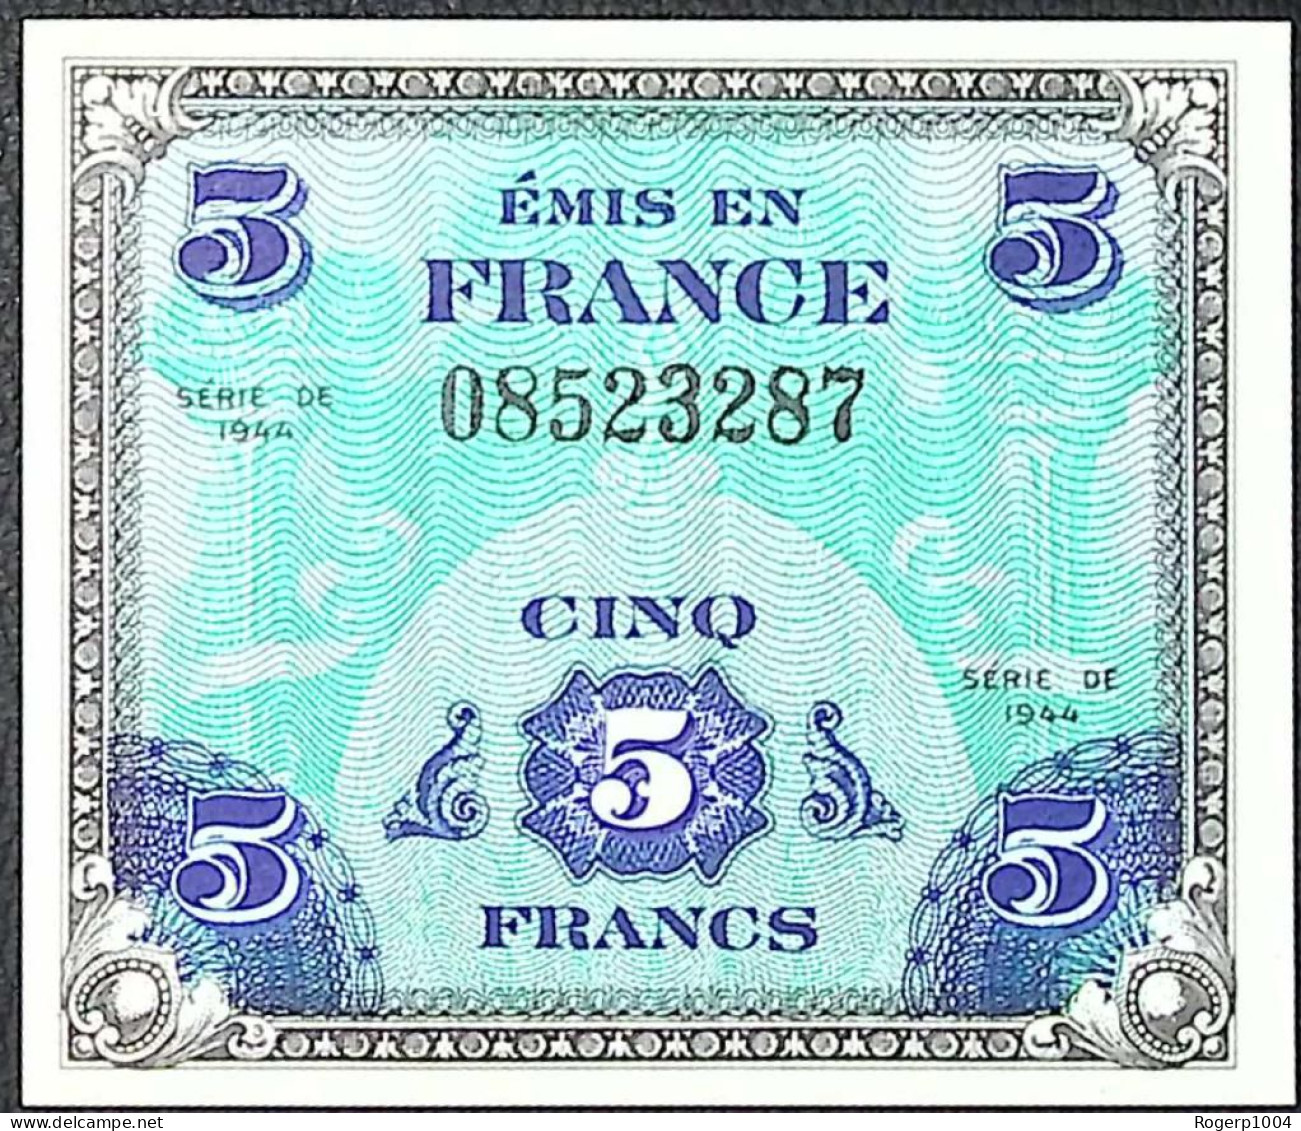 FRANCE * Billets Du Trésor * 5 Francs Drapeau * 1944 * Sans Série * Etat/Grade NEUF/UNC - 1944 Flagge/Frankreich